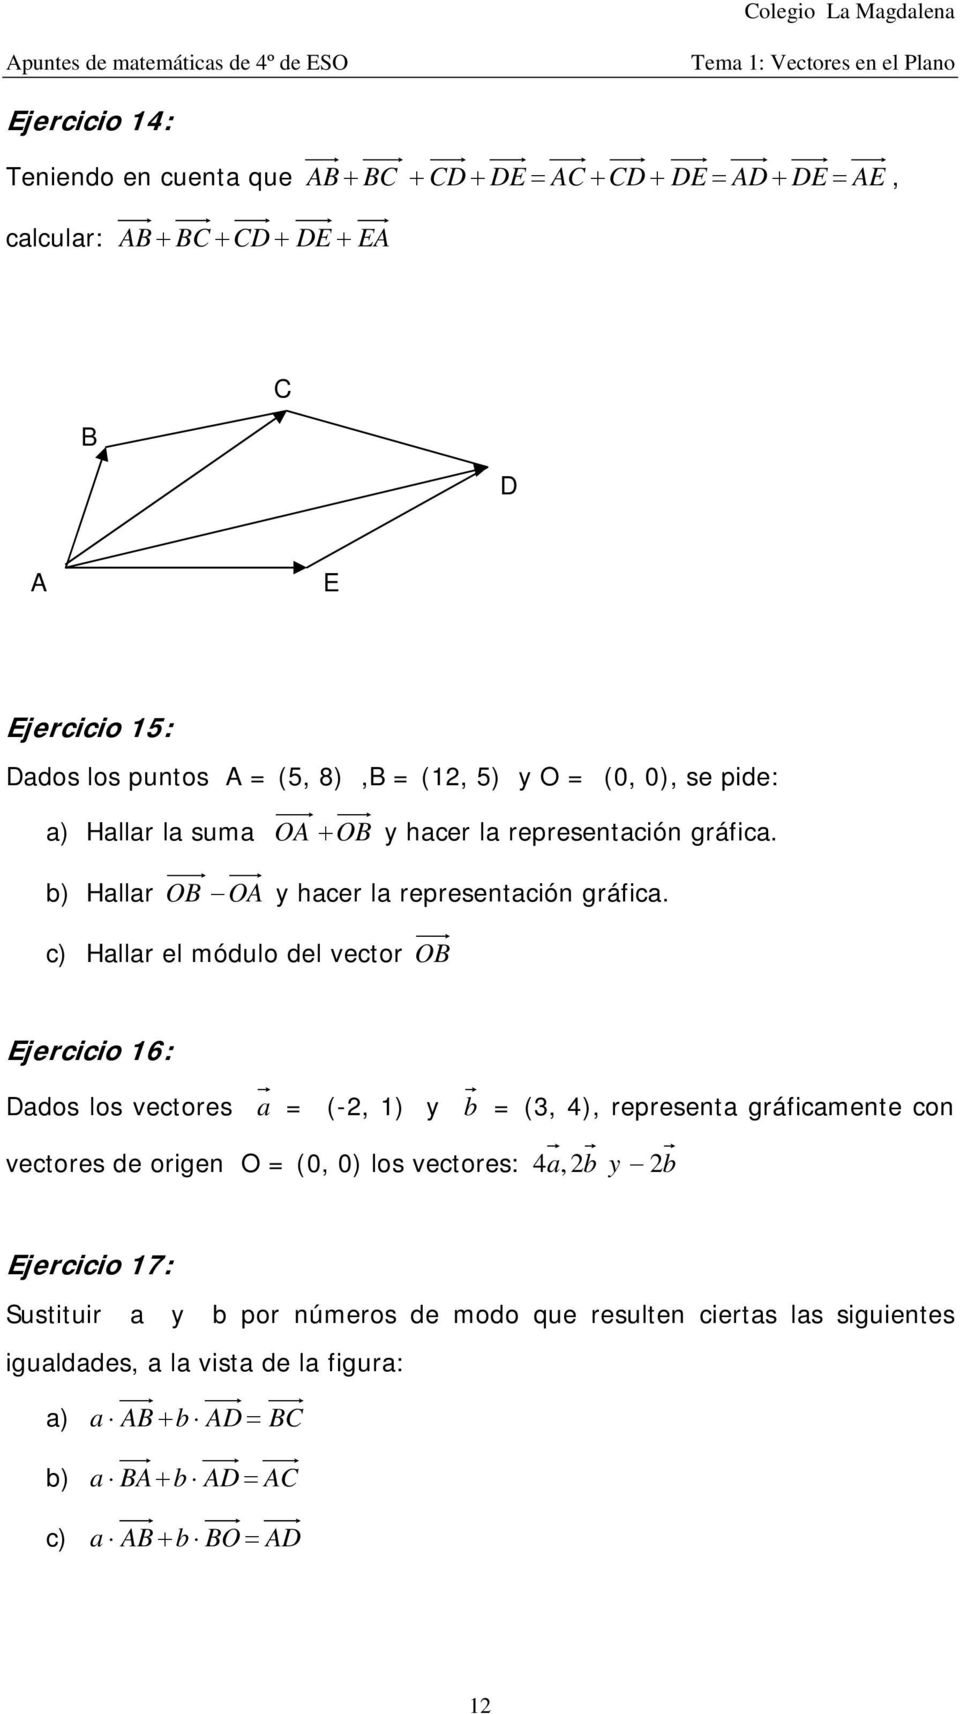 c) Hallar el módulo del vector OB Ejercicio 6: Dados los vectores a = (-, ) y b = (3, 4), represeta gráficamete co vectores de orige O = (0, 0) los vectores: 4a, b y b